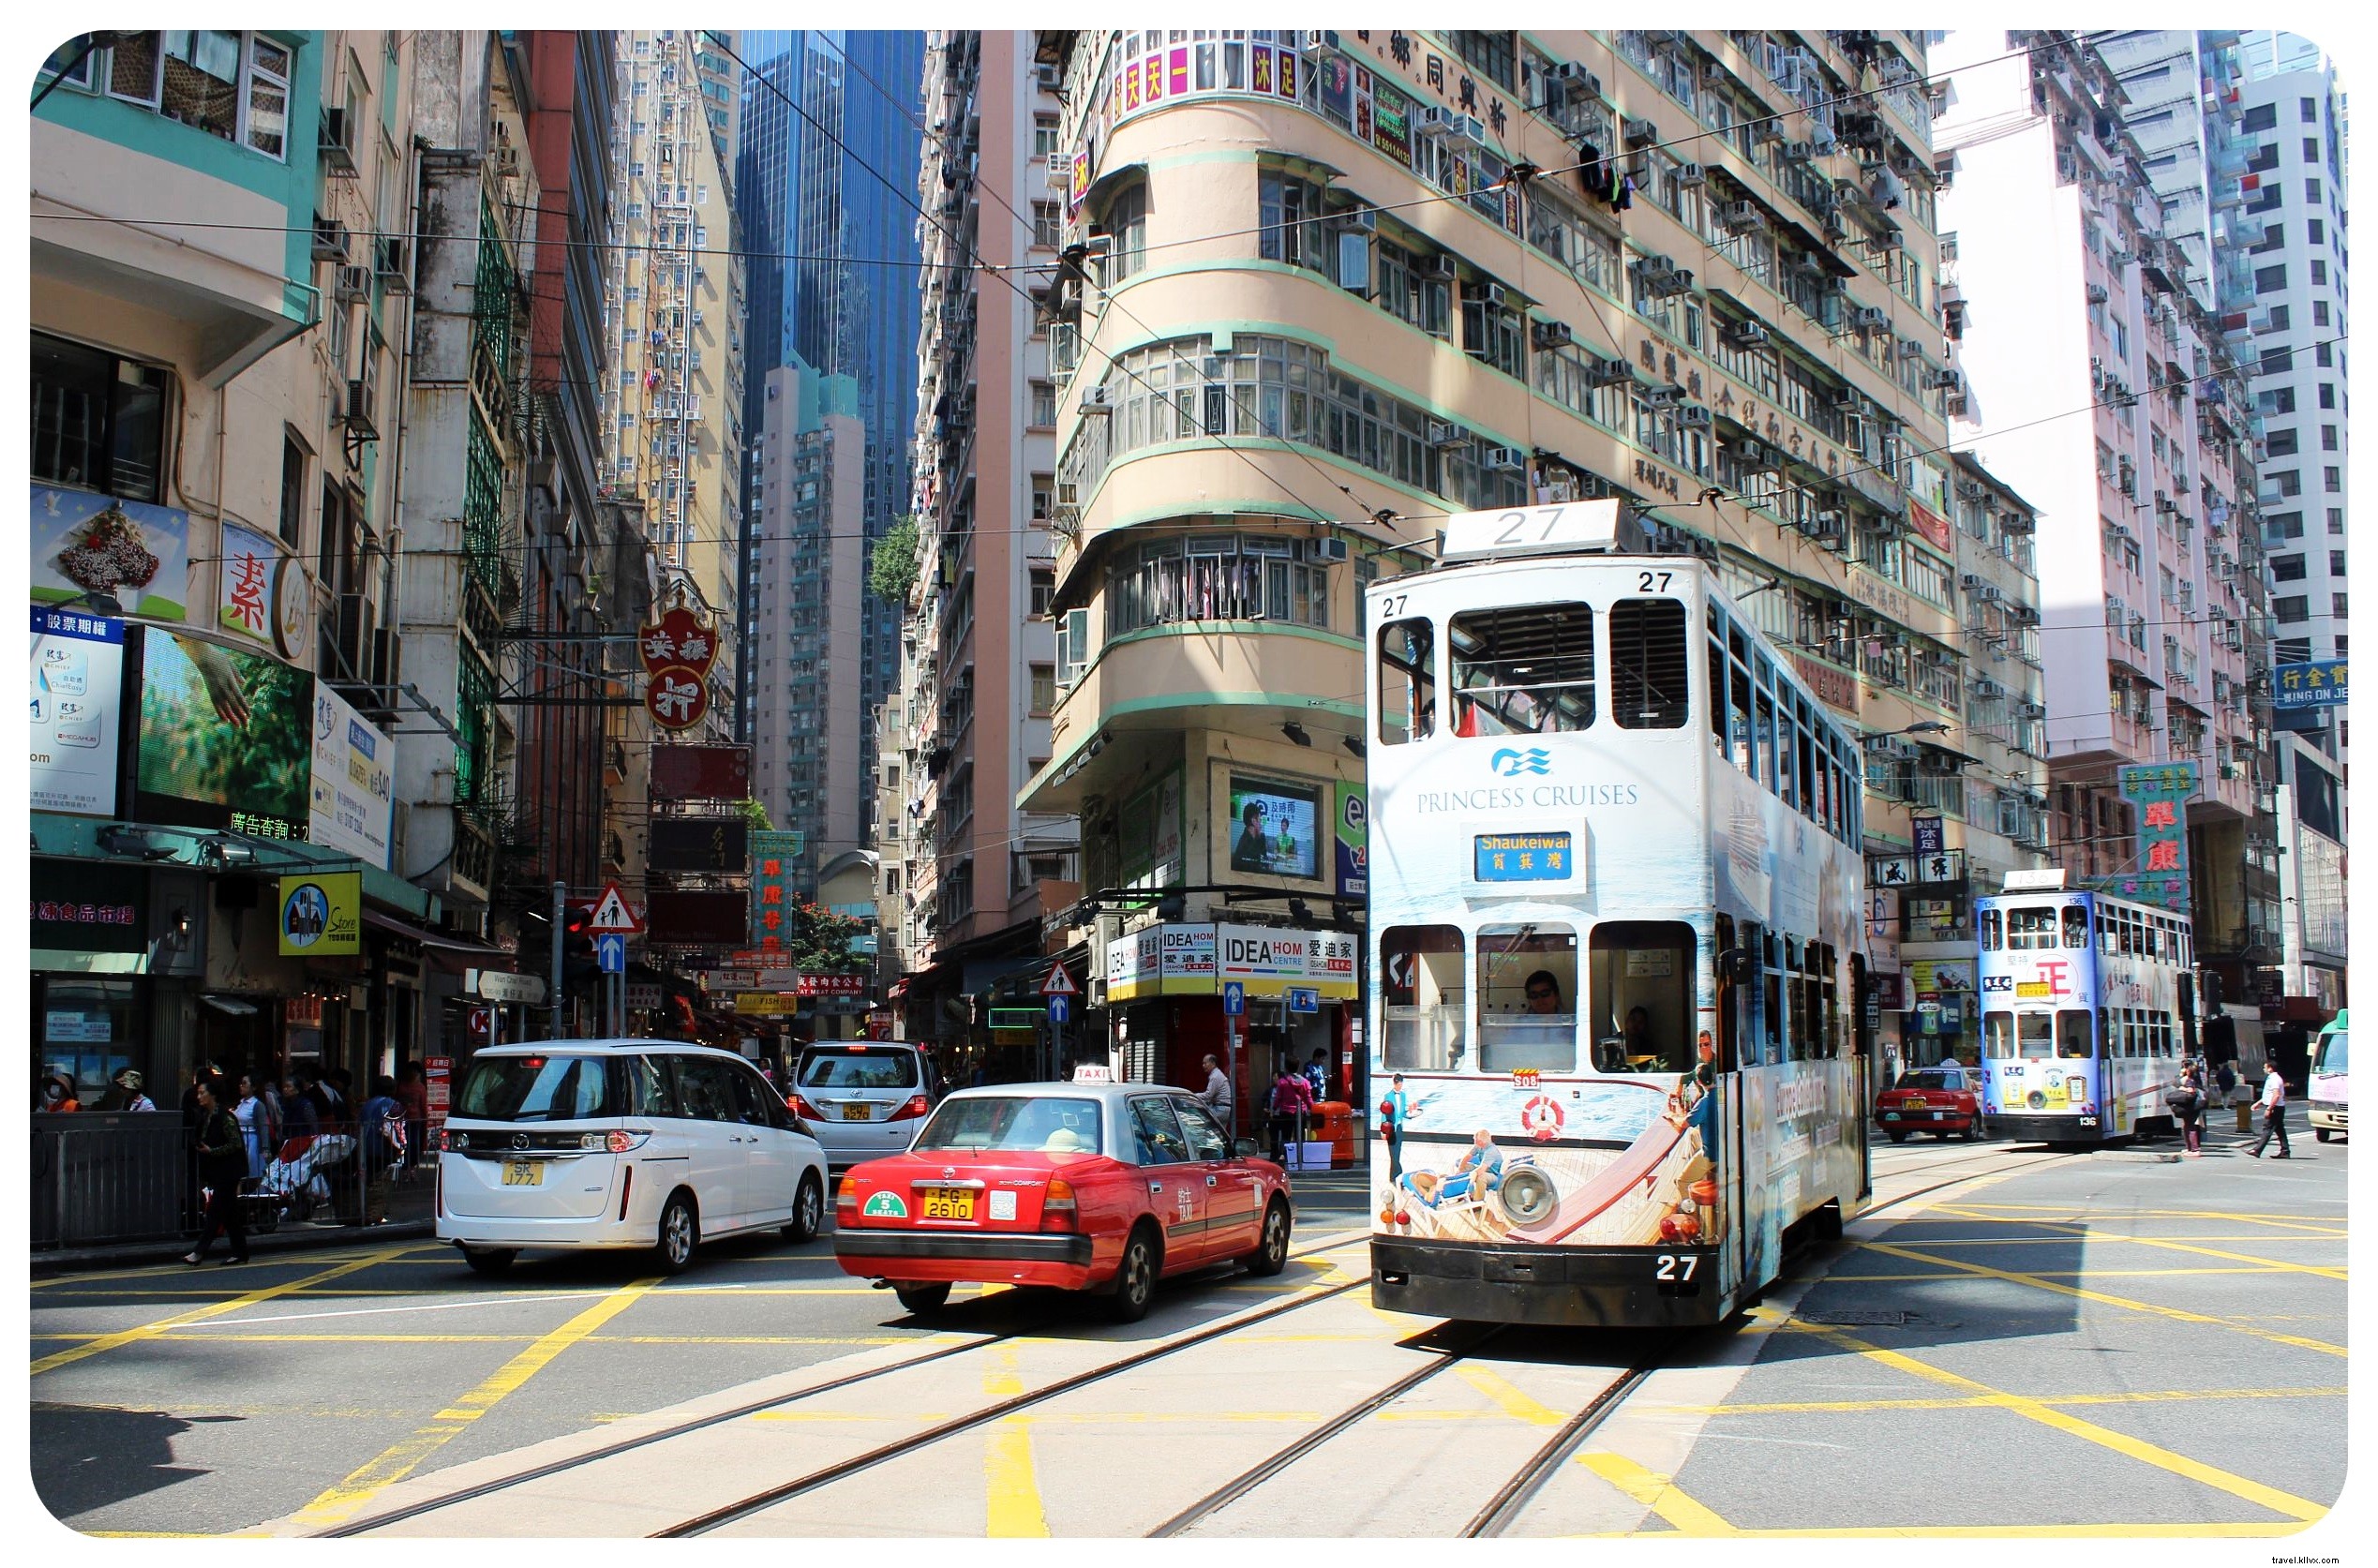 12 coisas que me surpreenderam em Hong Kong